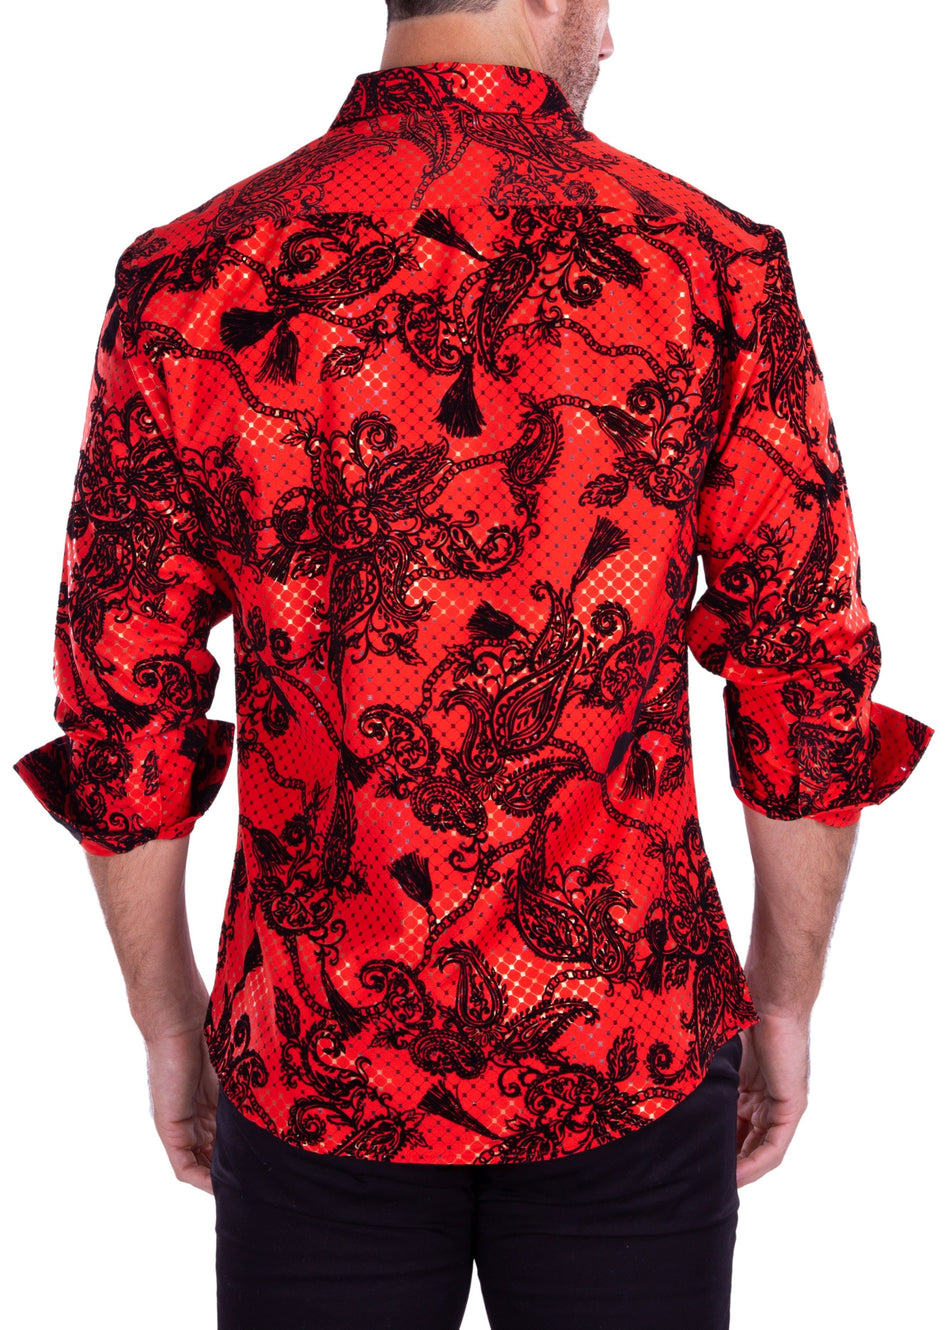 212233 - Men's Red Button Up Long Sleeve Dress Shirt